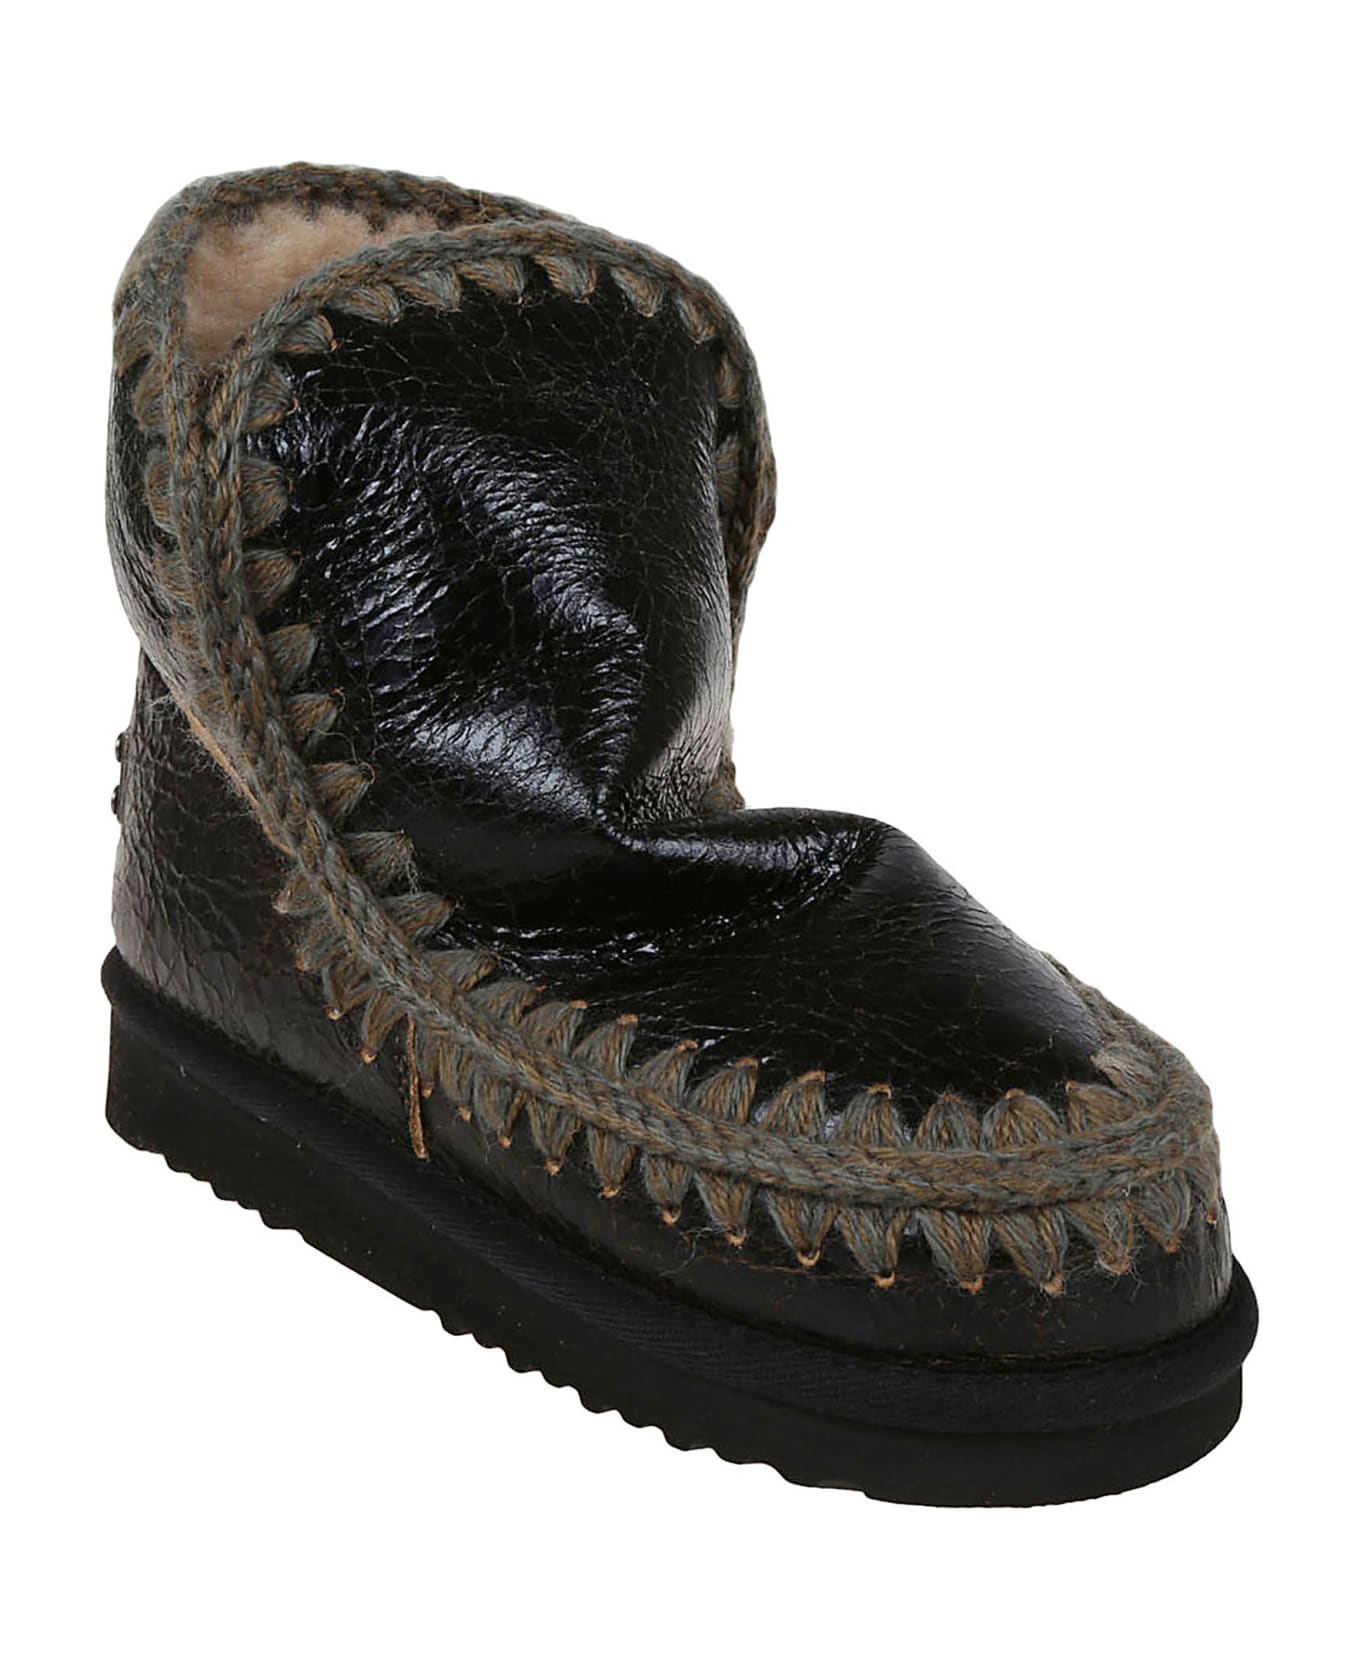 Mou Eskimo Boot 18cm - Wrsdkb Wrinkled Shiny Dark Brown ブーツ